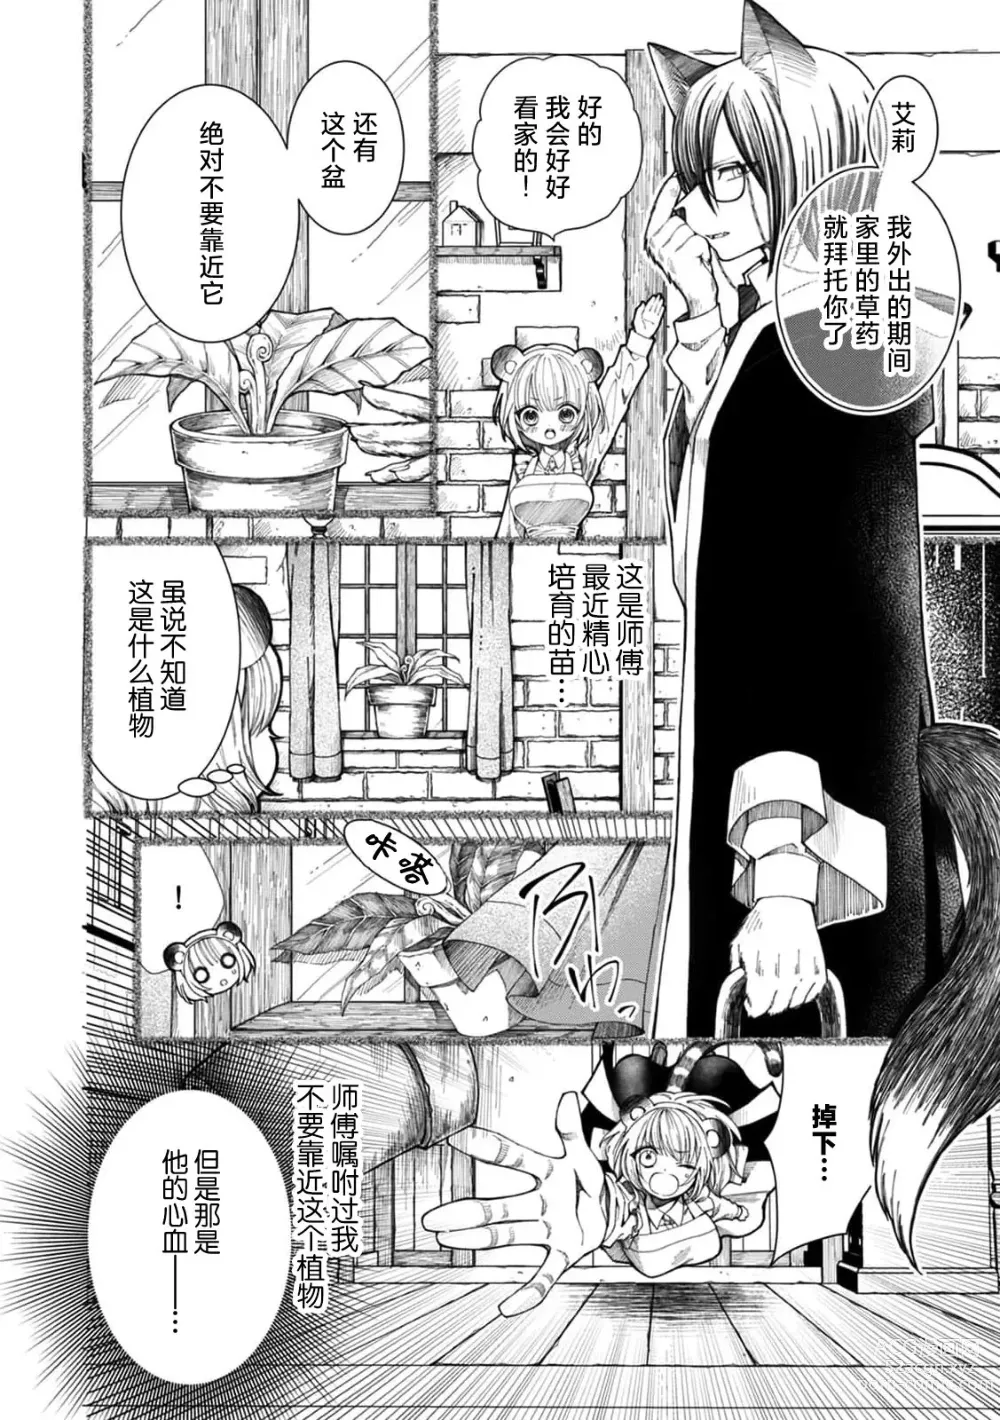 Page 2 of manga 兽人触手！媚药！3P！最后用真心话…